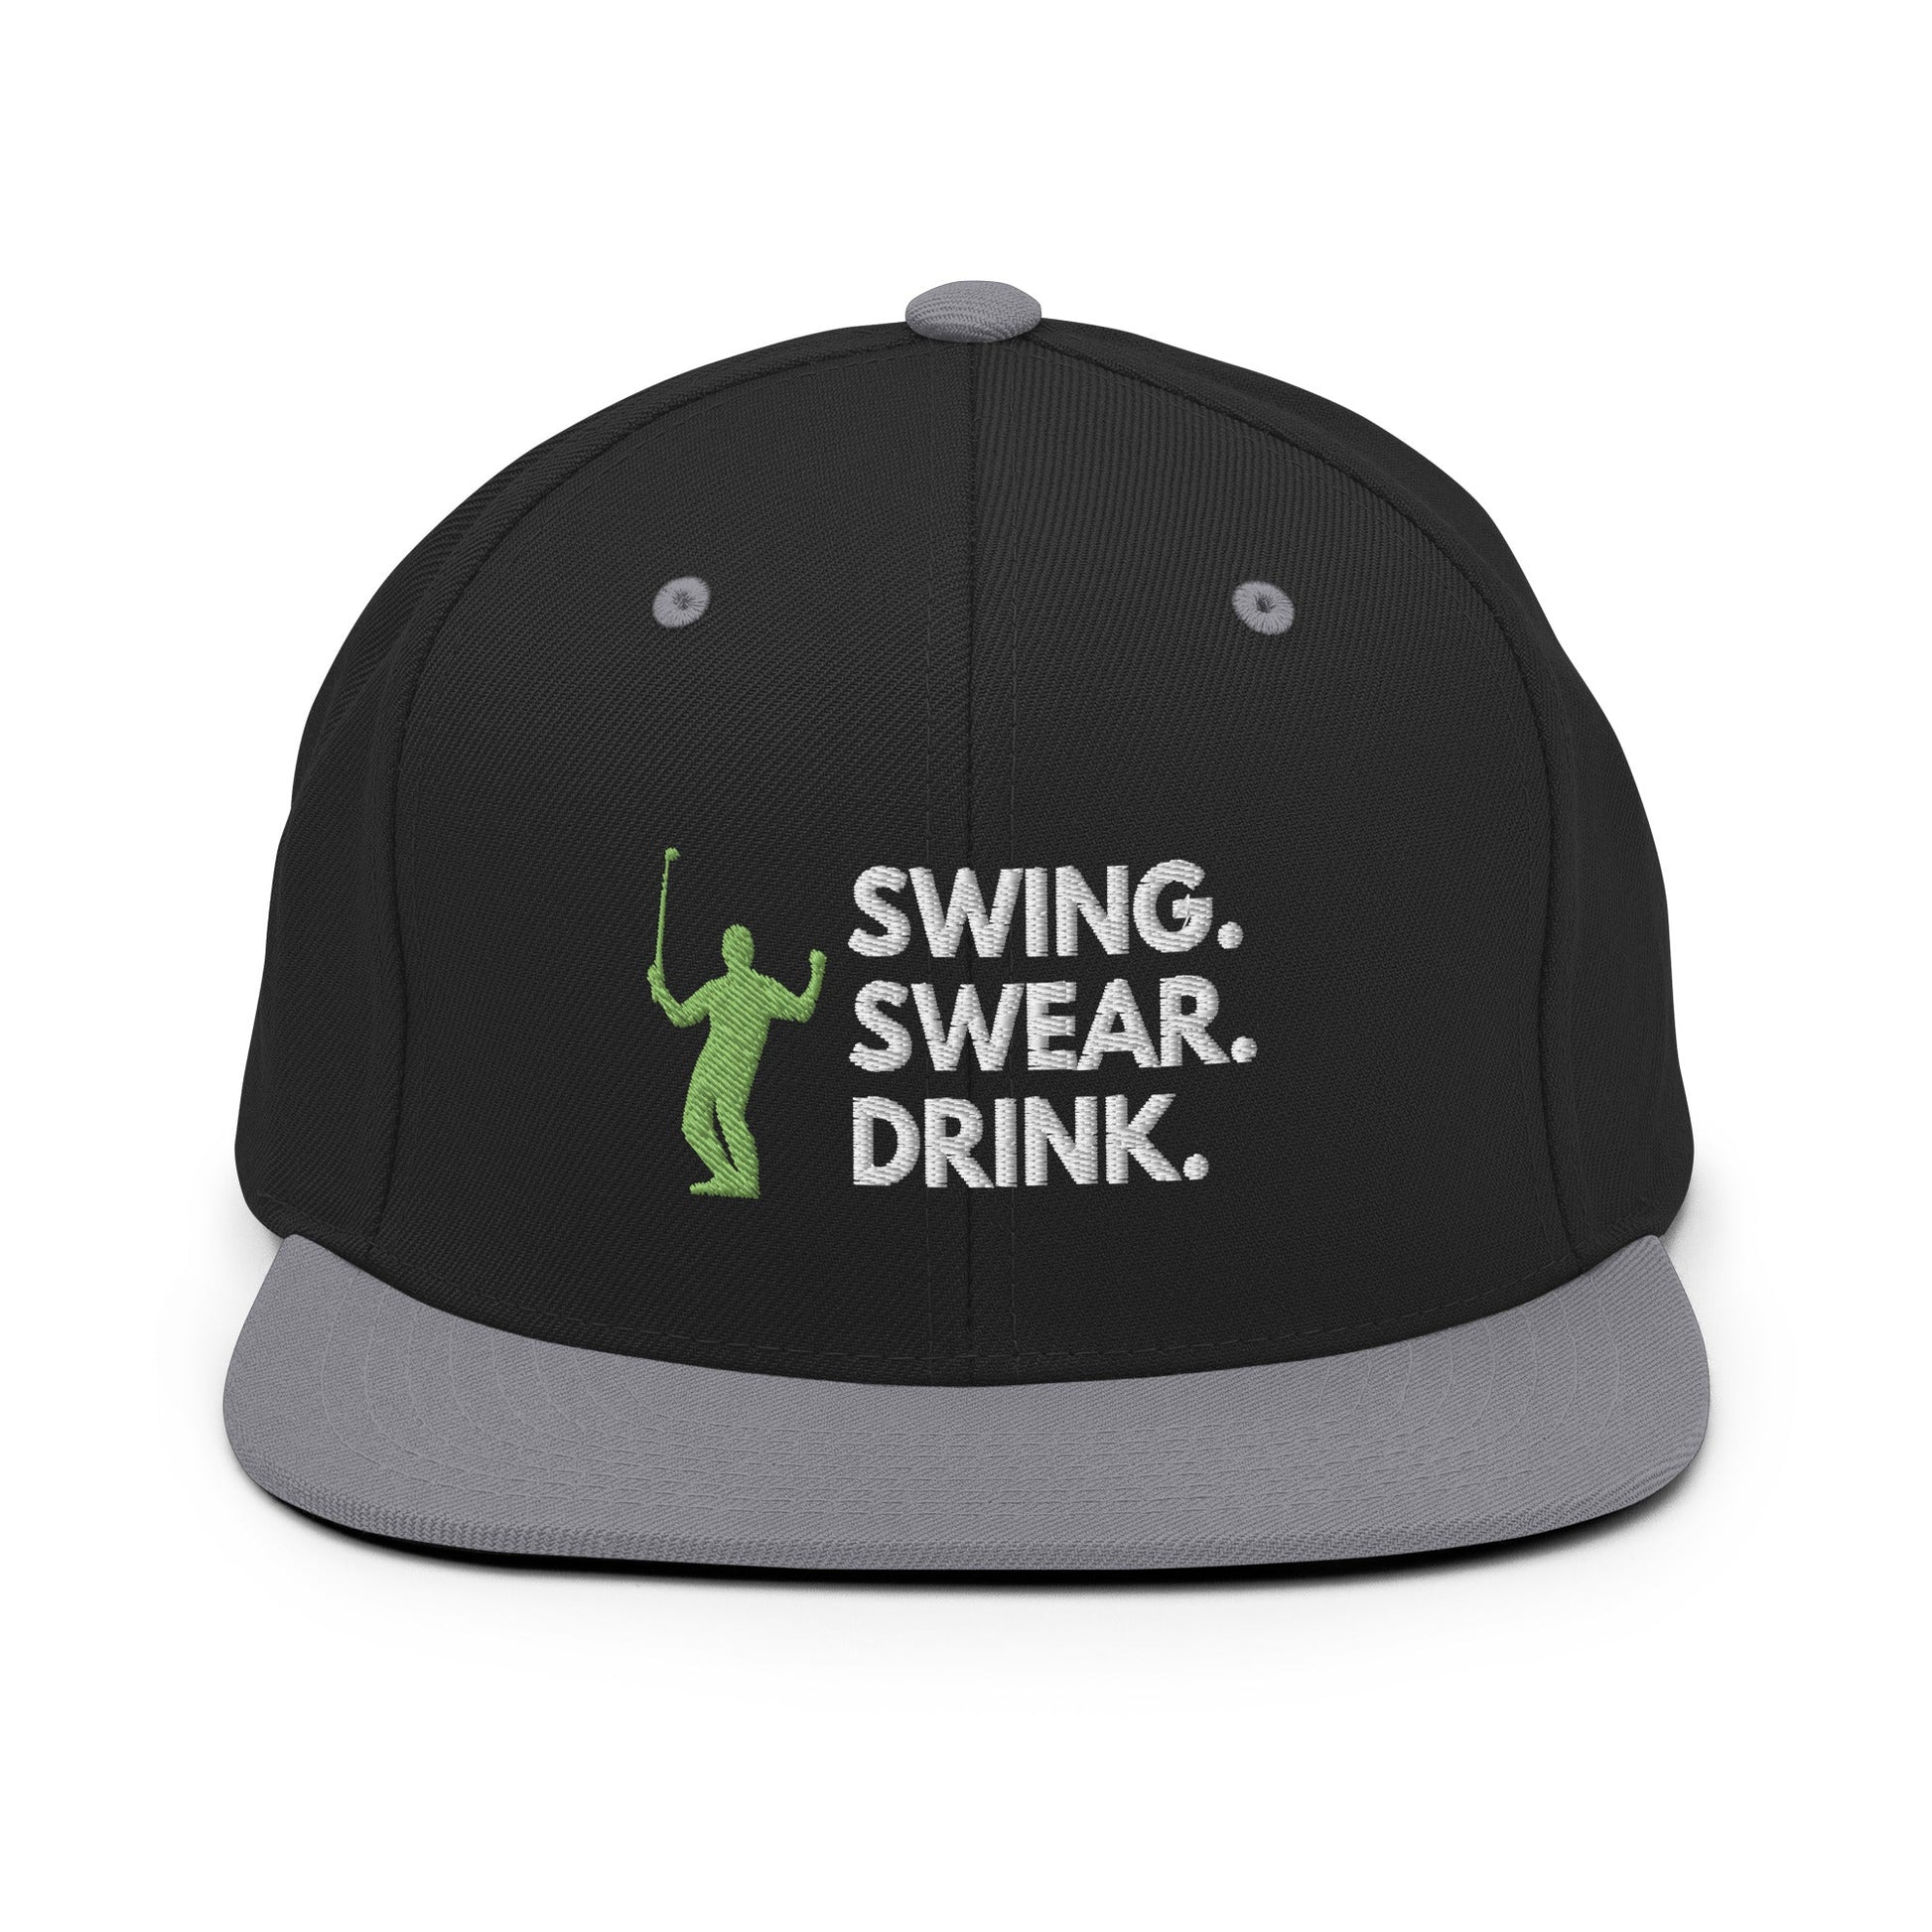 Funny Golfer Gifts  Snapback Hat Black/ Silver Swing. Swear. Drink Snapback Hat